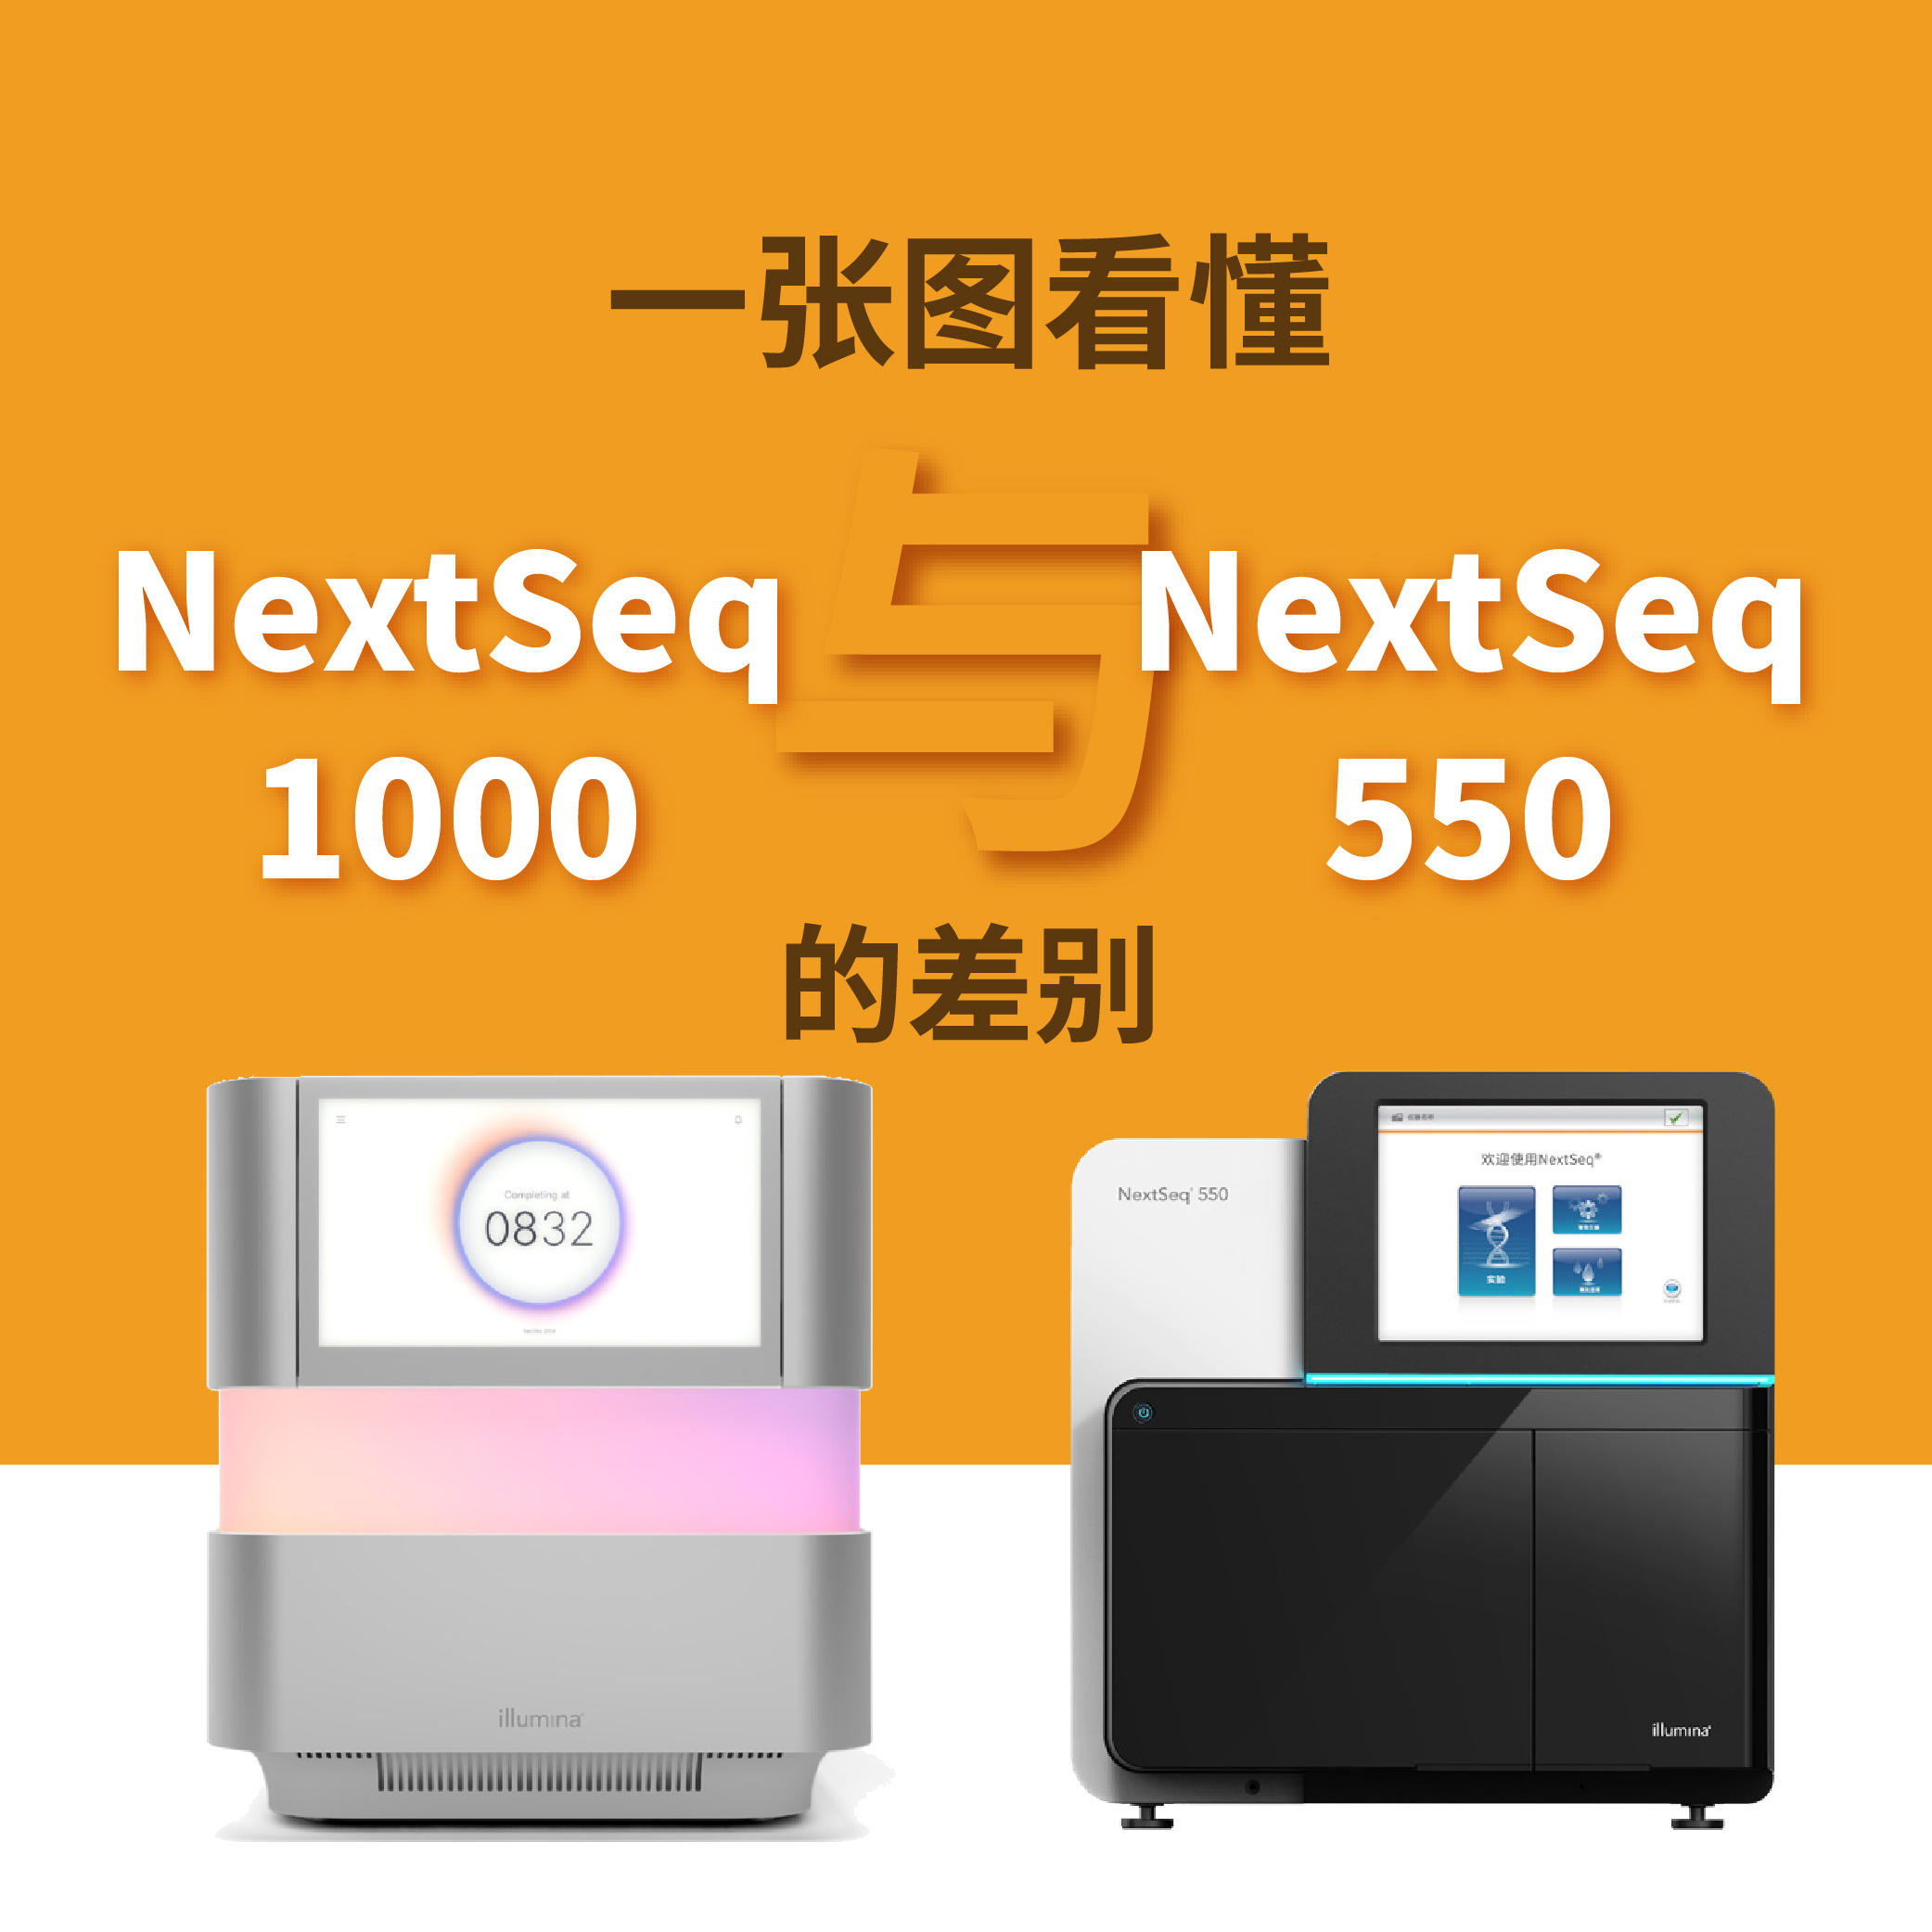 一张图看懂NextSeq1000 与 NextSeq550的差别